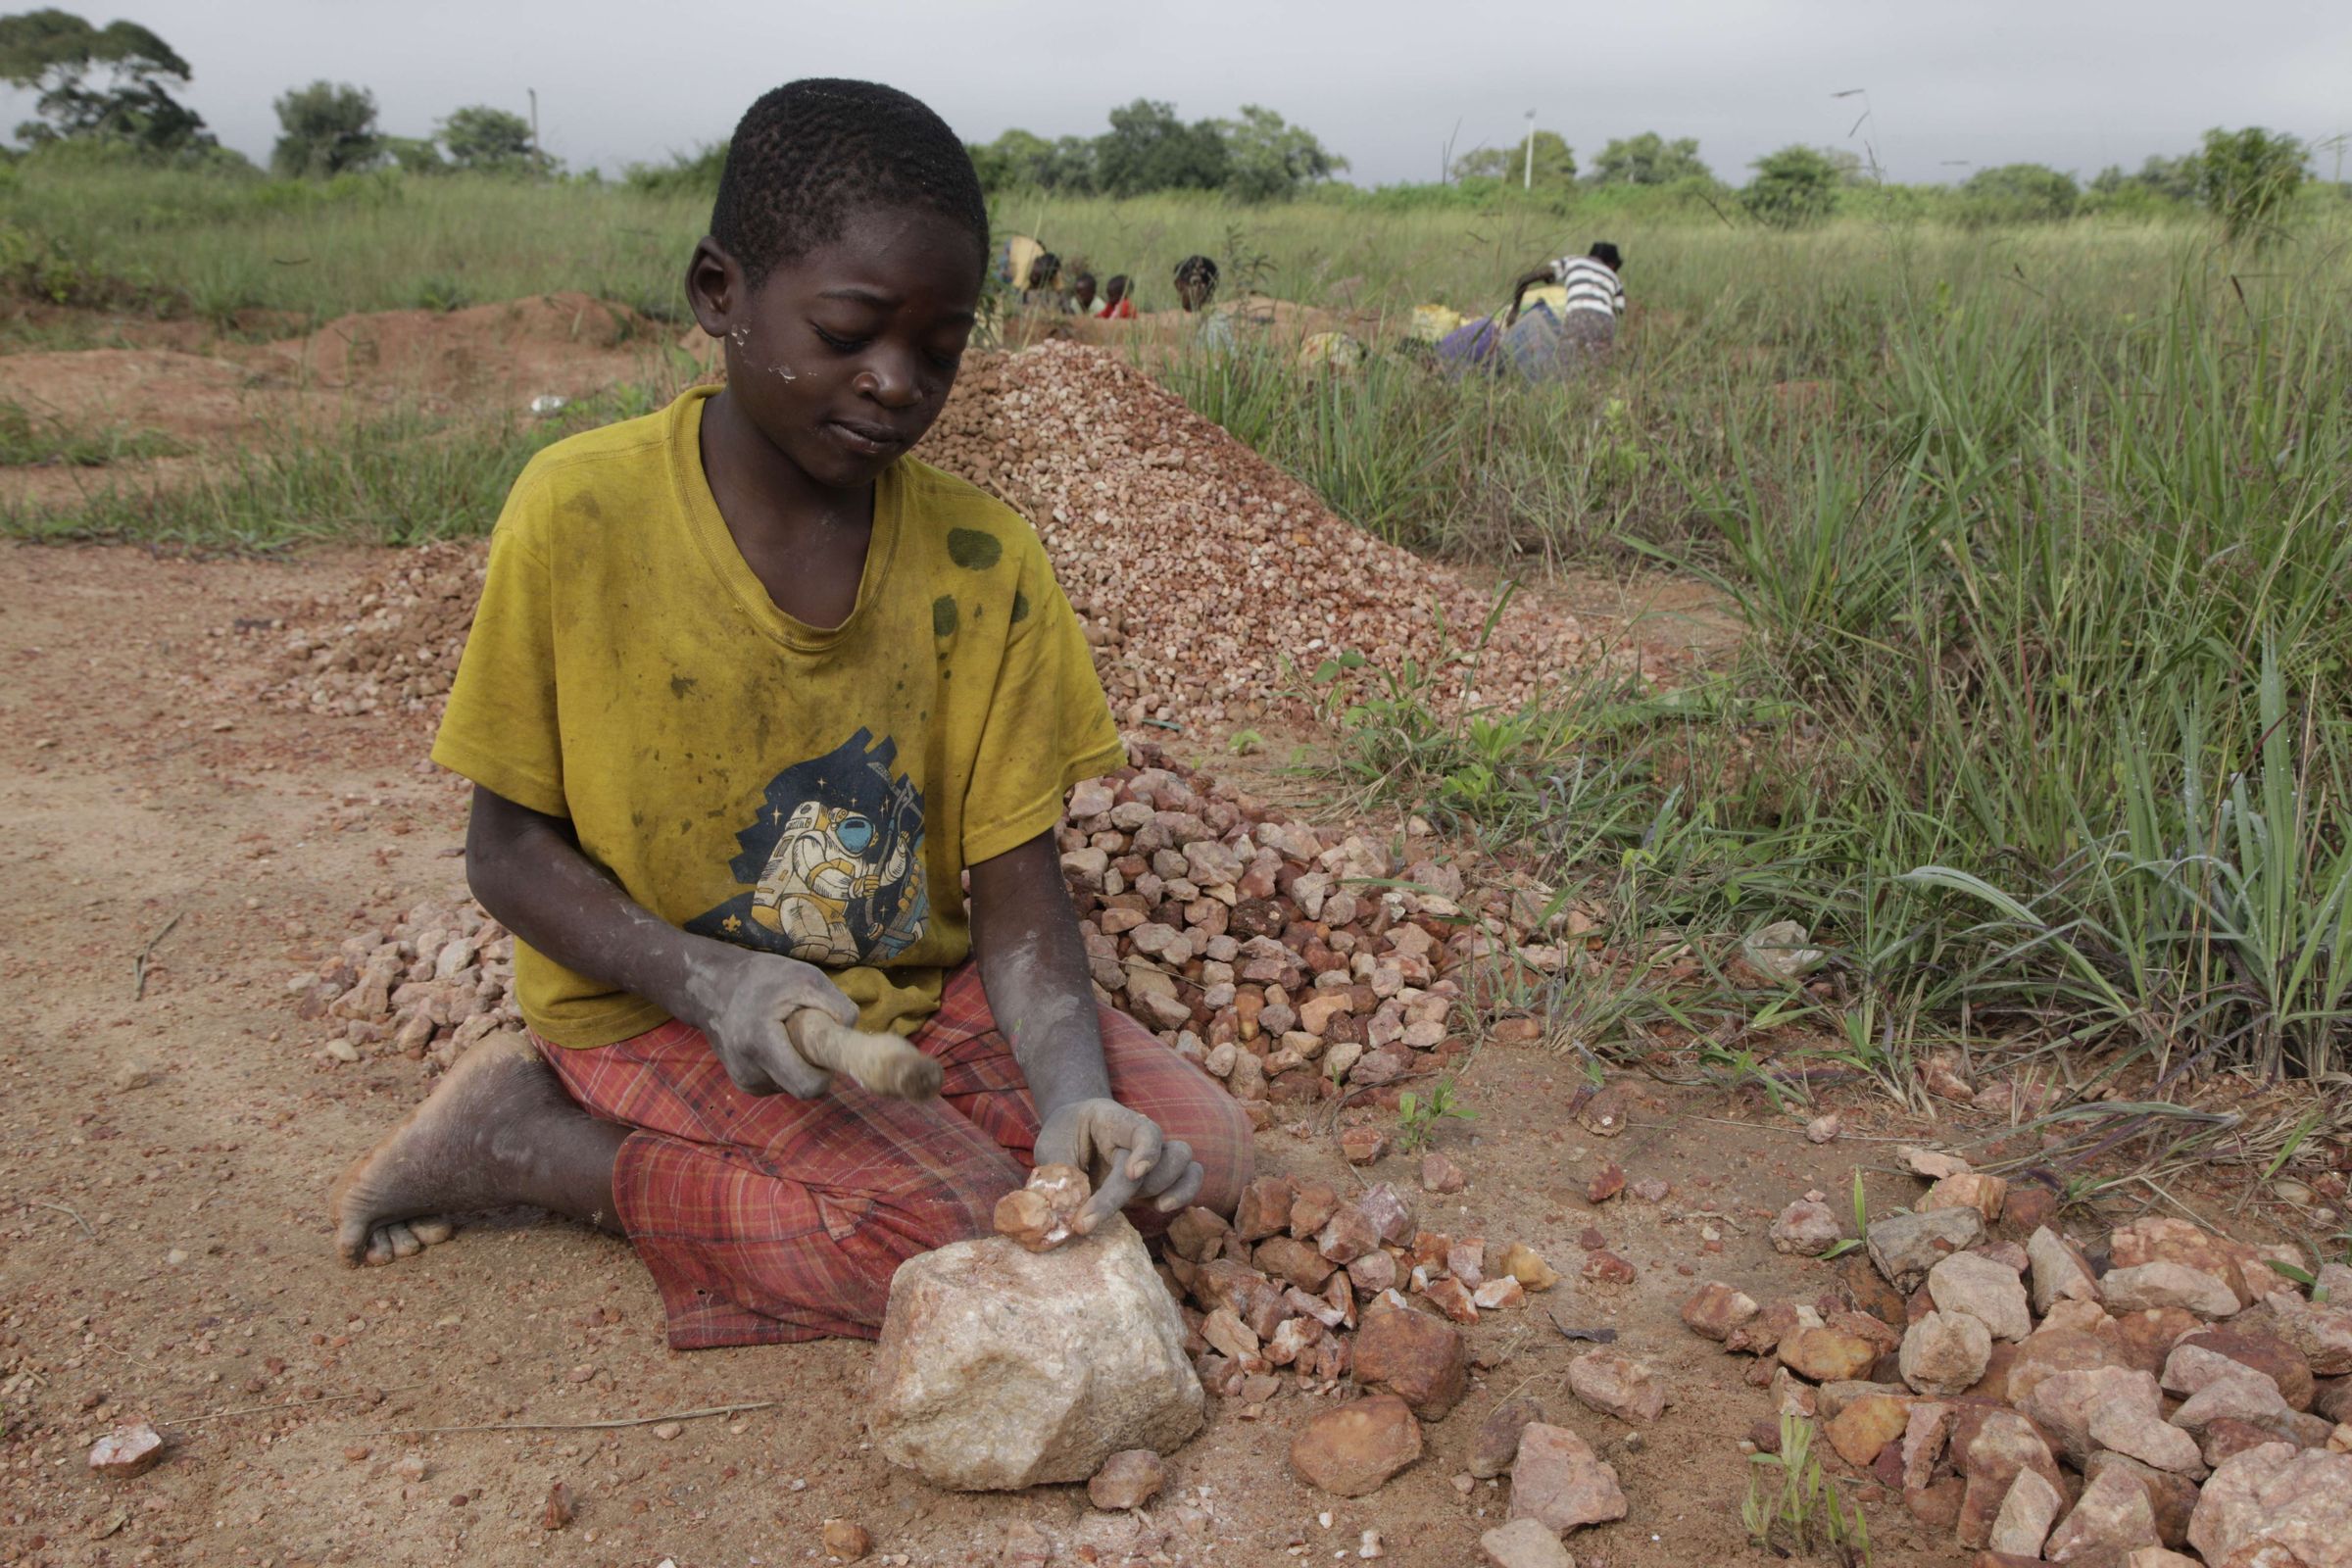 Reportage Sambia: "Ich mache nichts, außer zu arbeiten."; Foto: Junge arbeitet in Sandgrube (Quelle: Christian Herrmanny / Kindernothilfe)